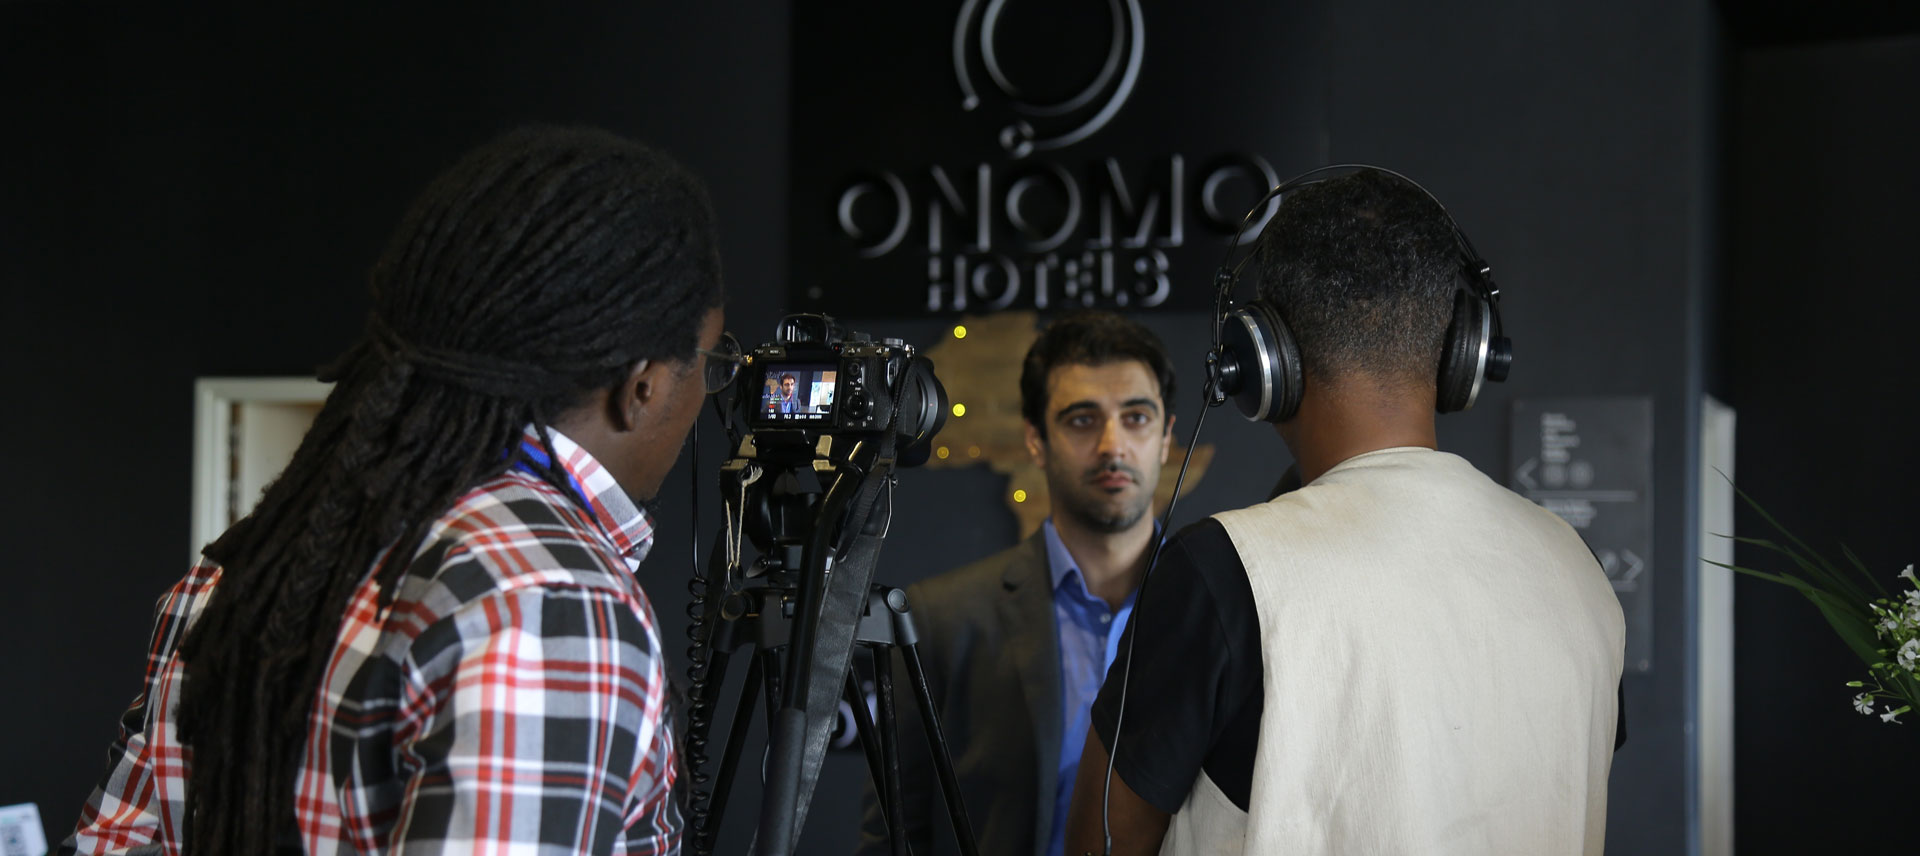 event highlight video Onomo hotel Kigali